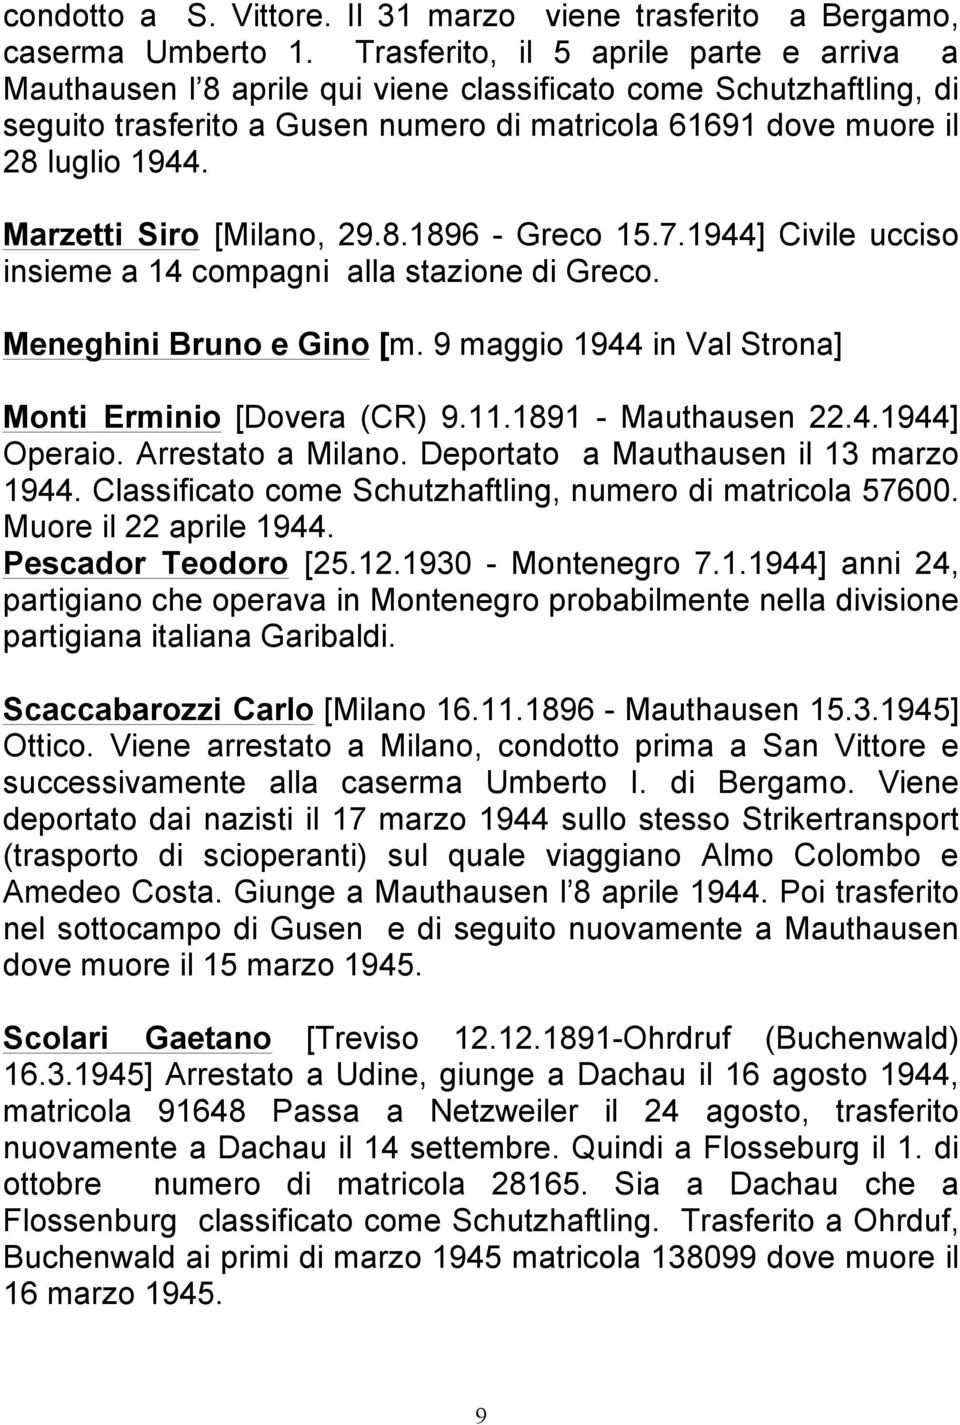 Marzetti Siro [Milano, 29.8.1896 - Greco 15.7.1944] Civile ucciso insieme a 14 compagni alla stazione di Greco. Meneghini Bruno e Gino [m. 9 maggio 1944 in Val Strona] Monti Erminio [Dovera (CR) 9.11.